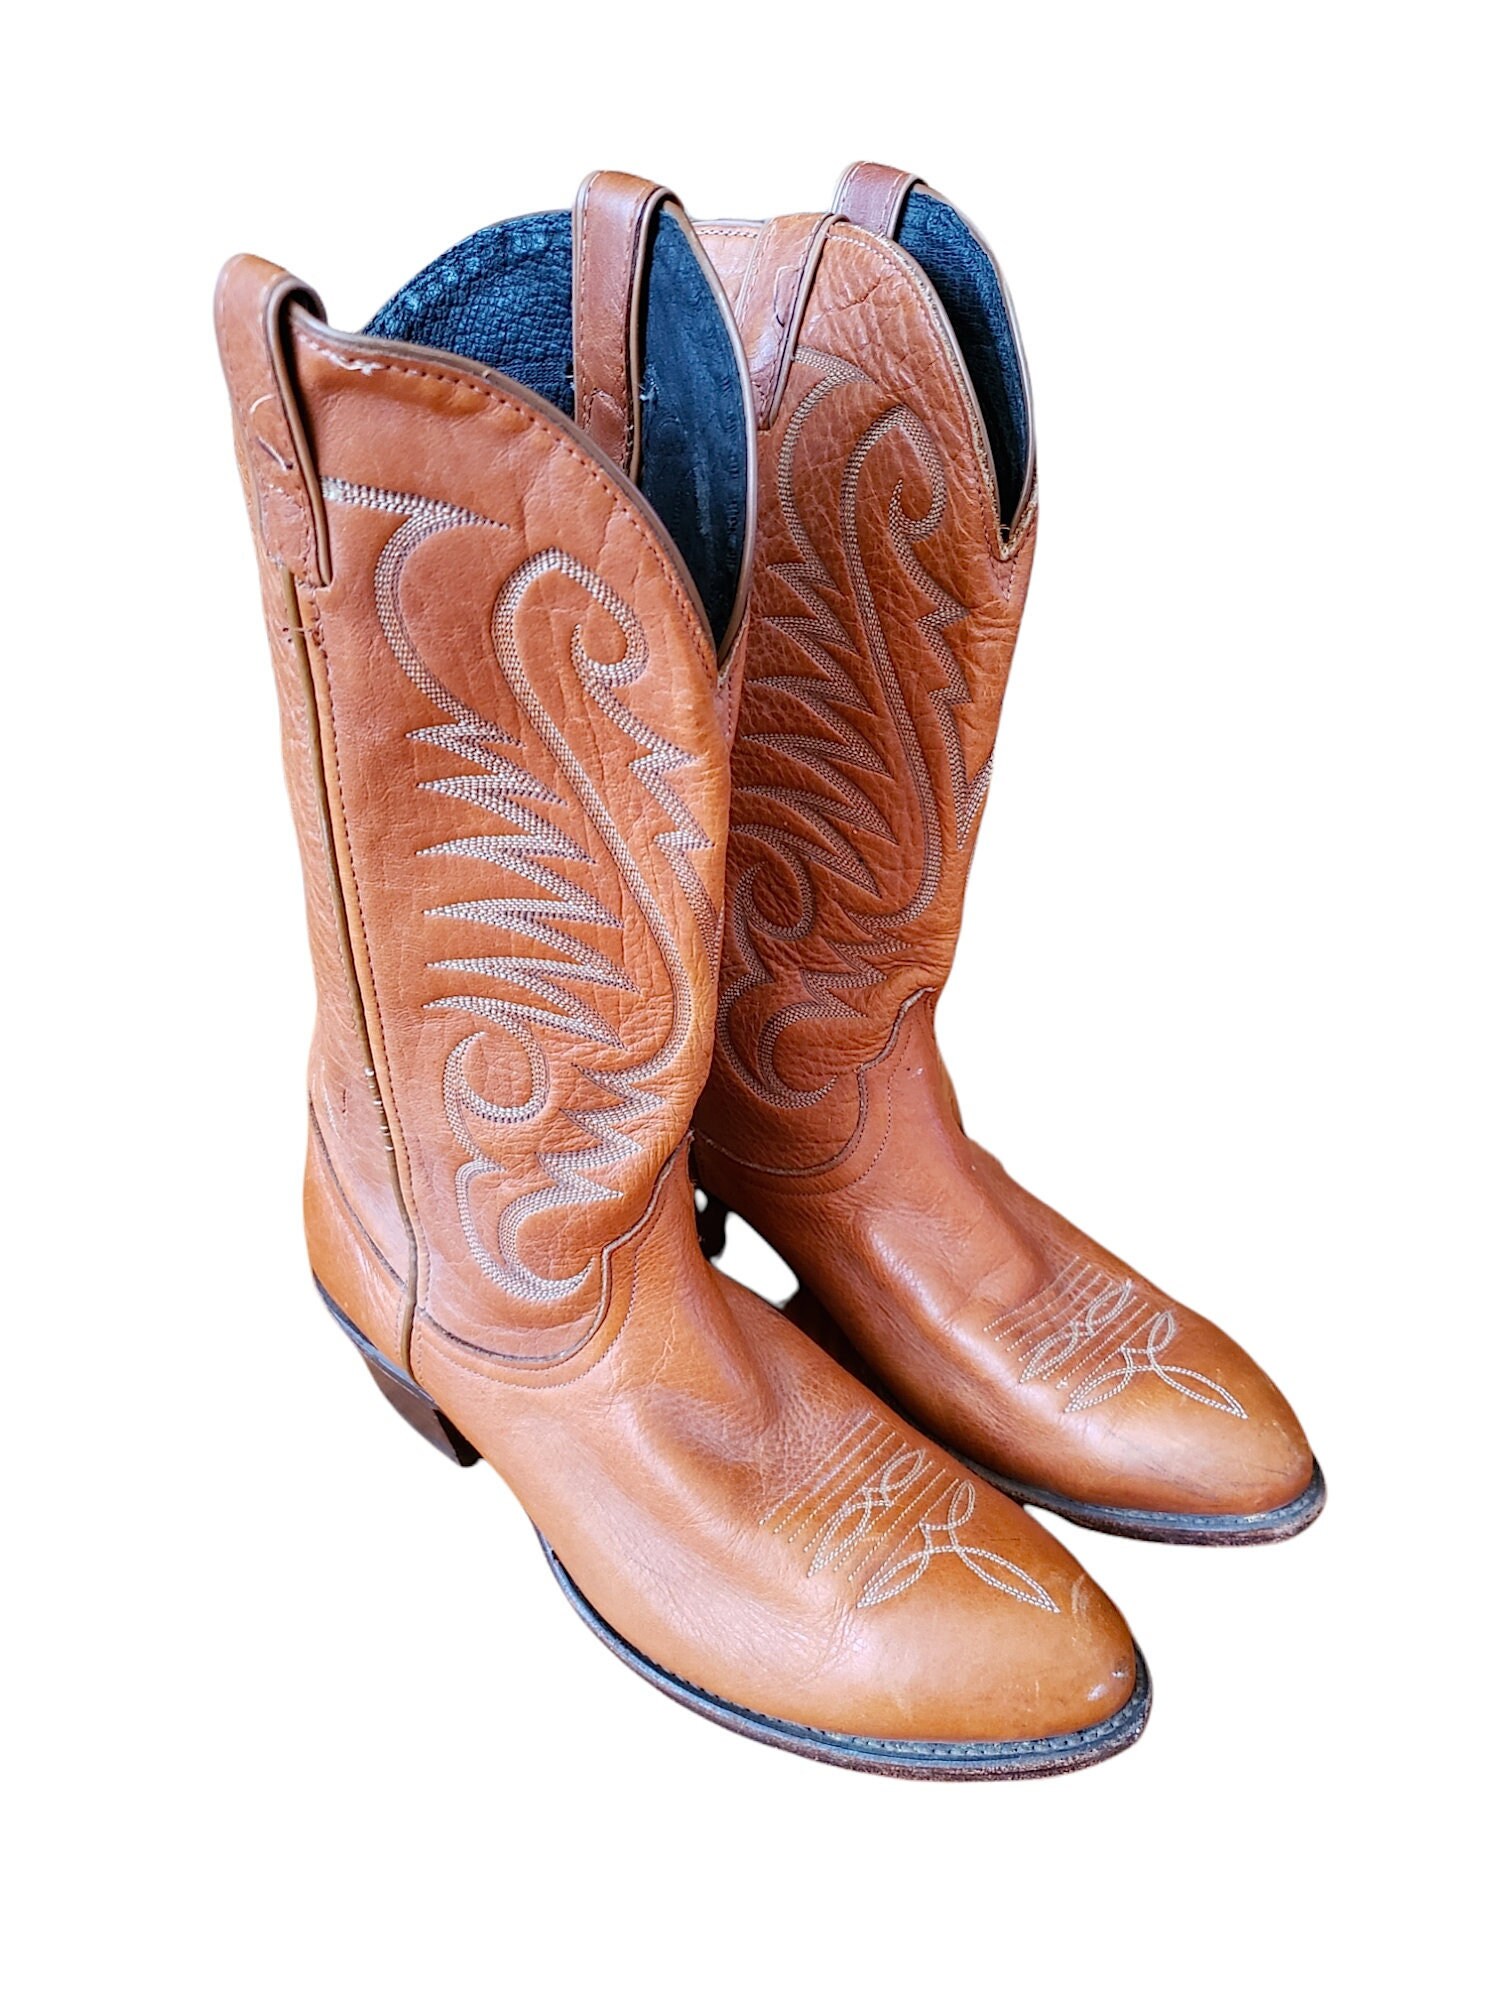 Schoenen Herenschoenen Laarzen Cowboy & Westernlaarzen Boots Cowboy Roper Vintage 1980s Black Leather Laredo Boots Men's 8 1/2 D 